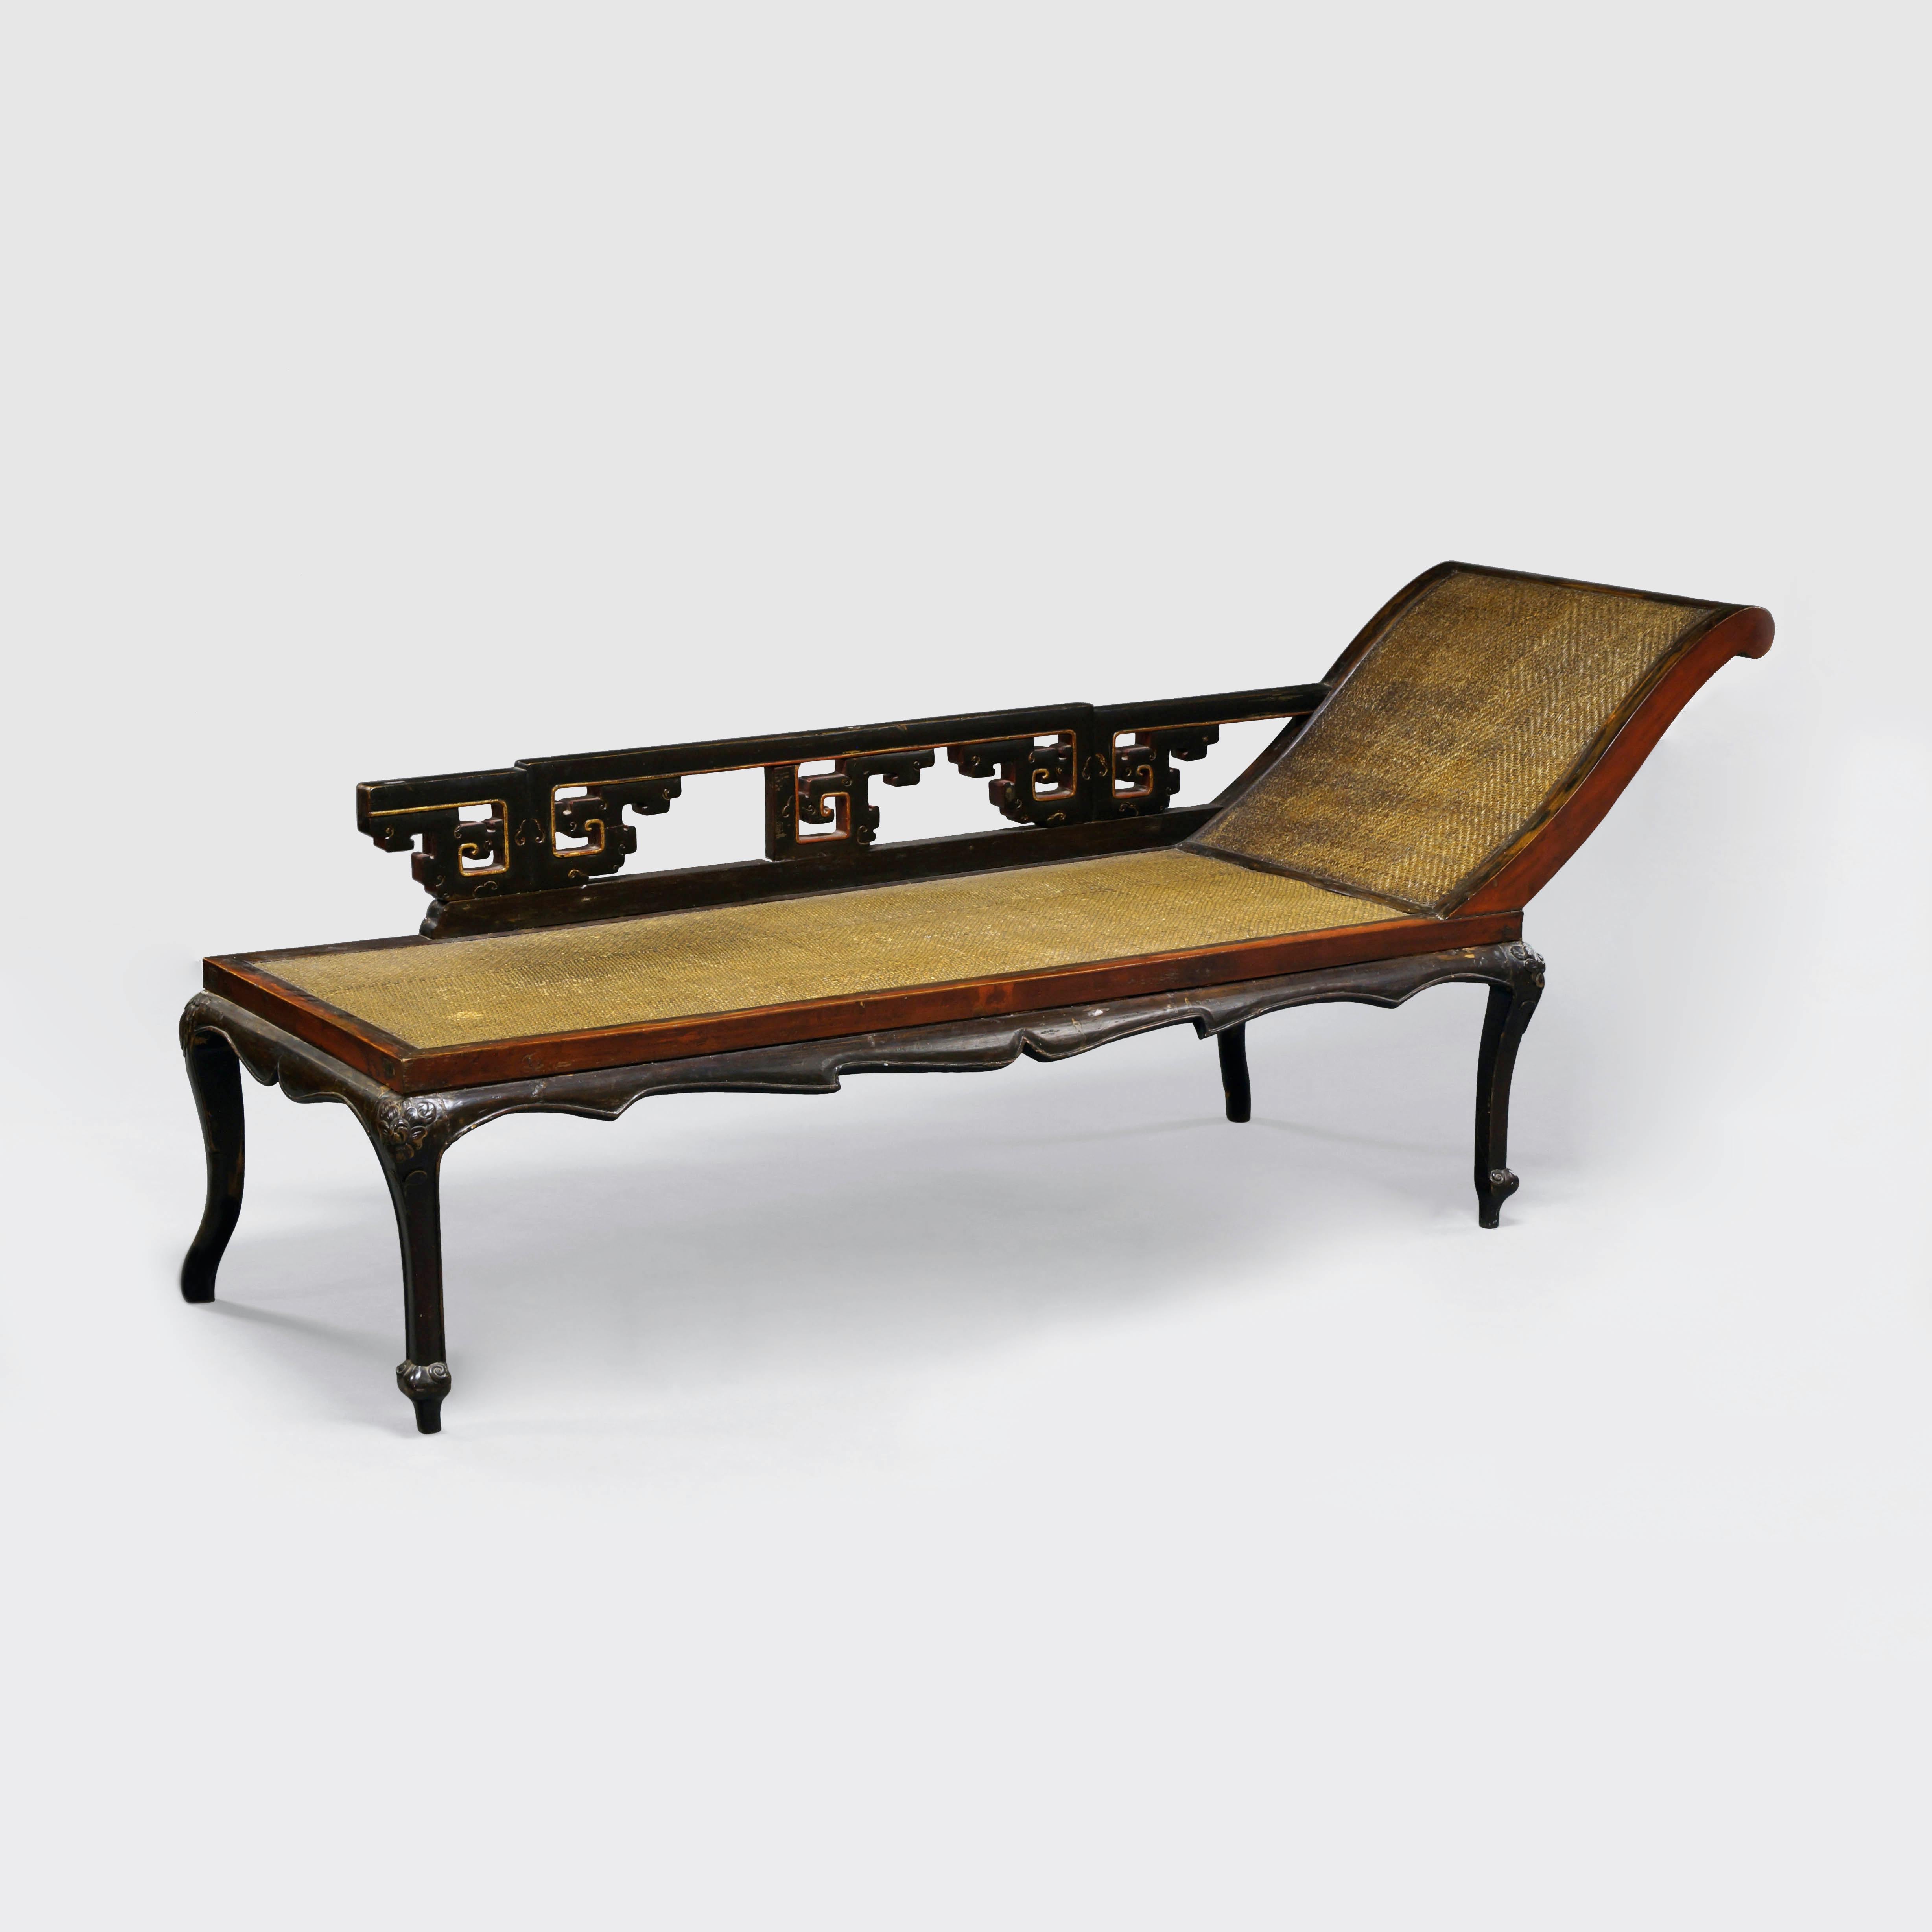 
Chinesisches Tagesbett aus dem späten 19. bis frühen 20. Jahrhundert mit weicher Rohrdecke, das die Eleganz der Jiangsu-Möbel verkörpert, die im alten China sehr geschätzt wurden. Elegant proportioniert, mit abgerundeten Ecken und archaischen